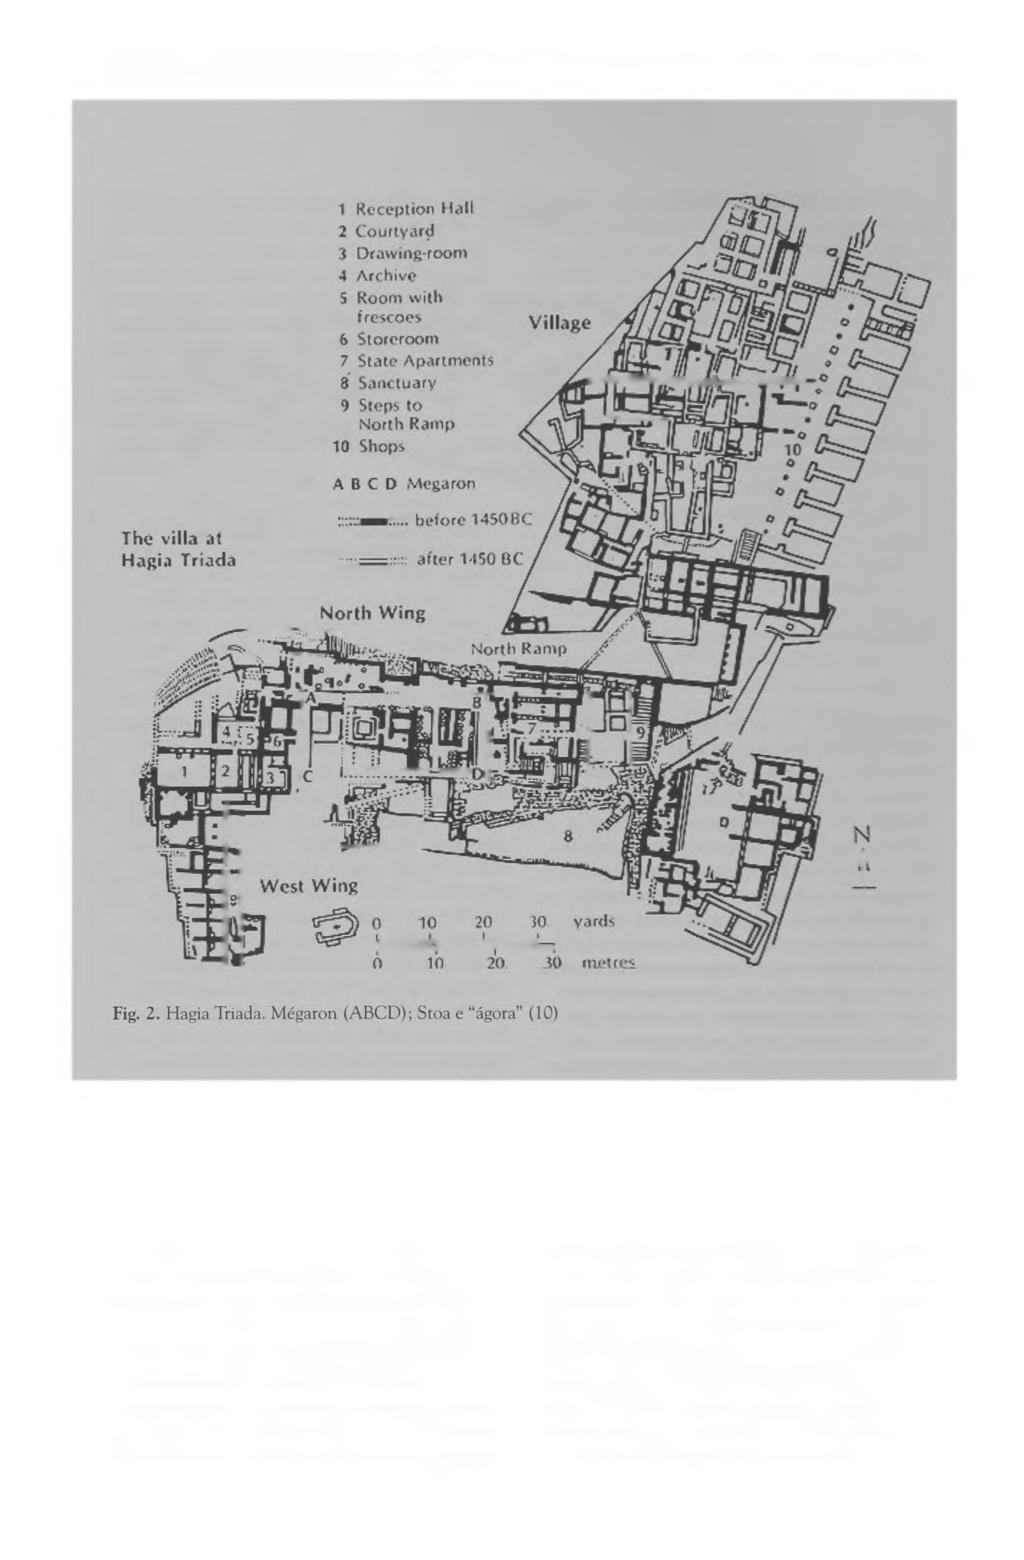 MONZANI, J. C. Análise espacial em arqueologia. Estudo de caso: Hagia Triada, Creta.